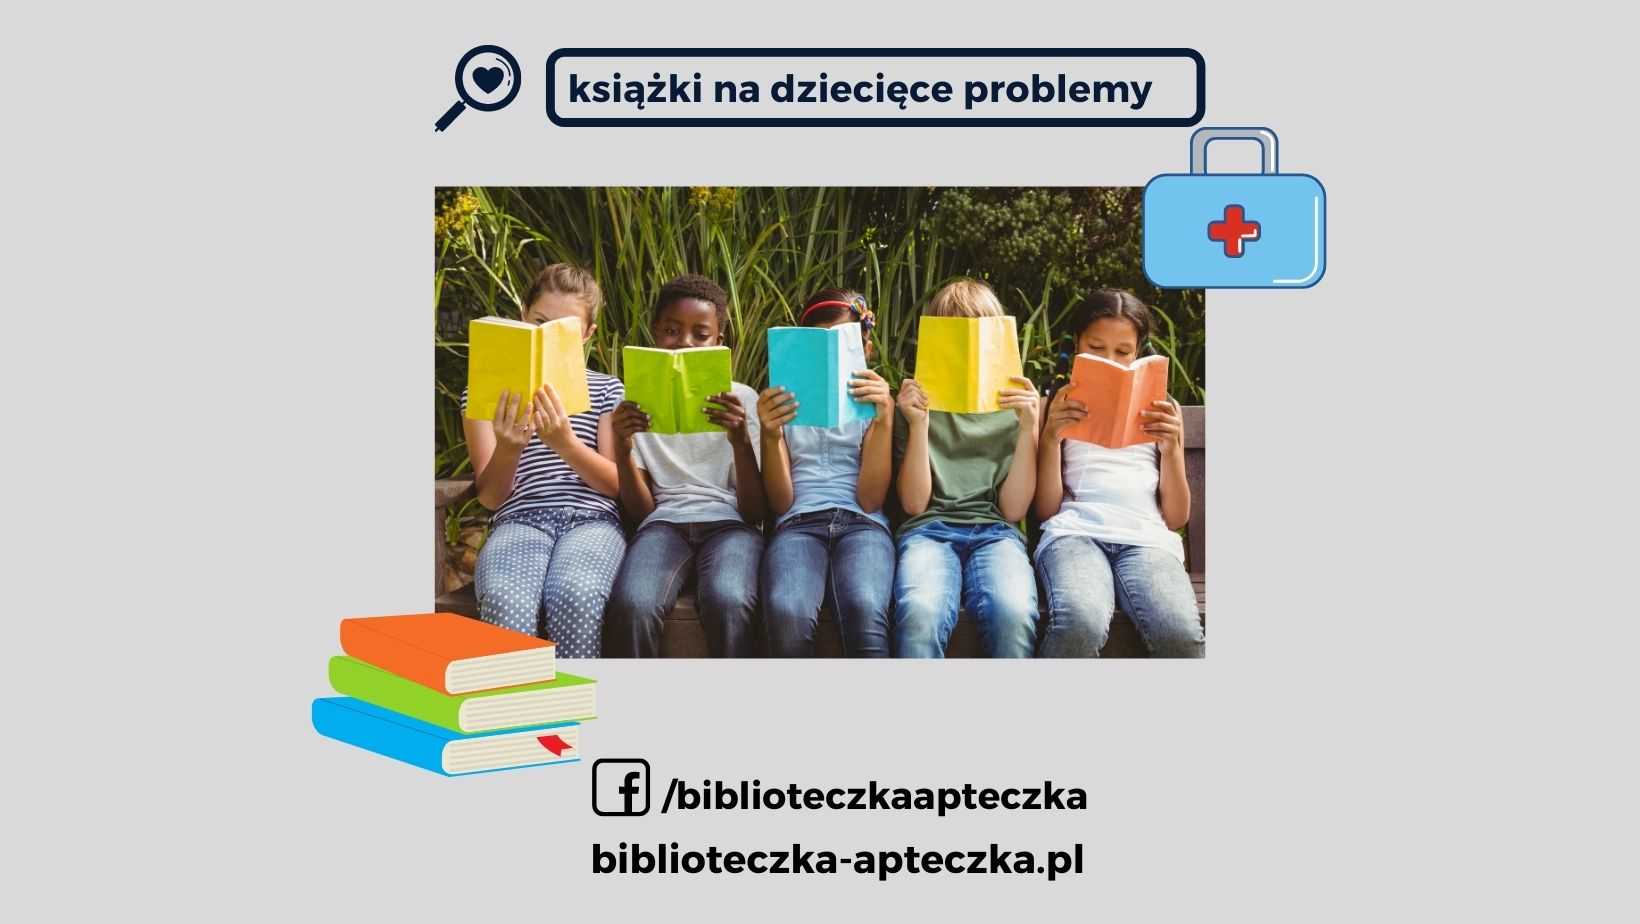 Książki na konkretne problemy - Biblioteczka-apteczka